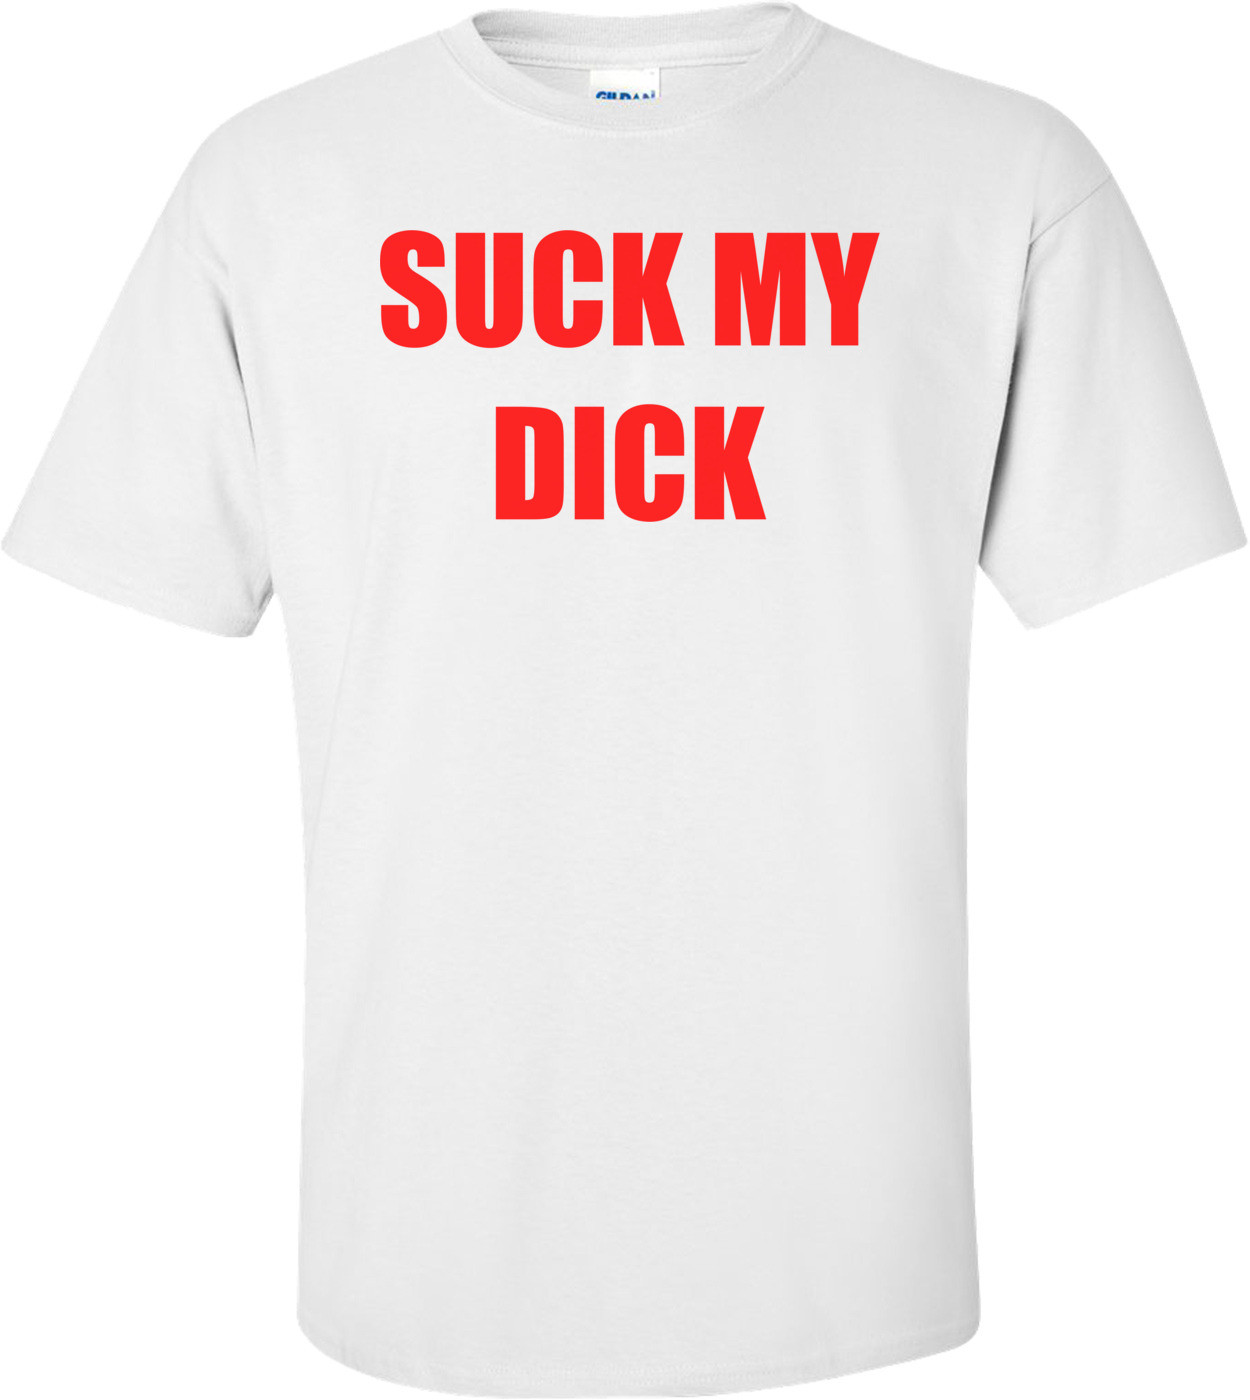 SUCK MY DICK Shirt